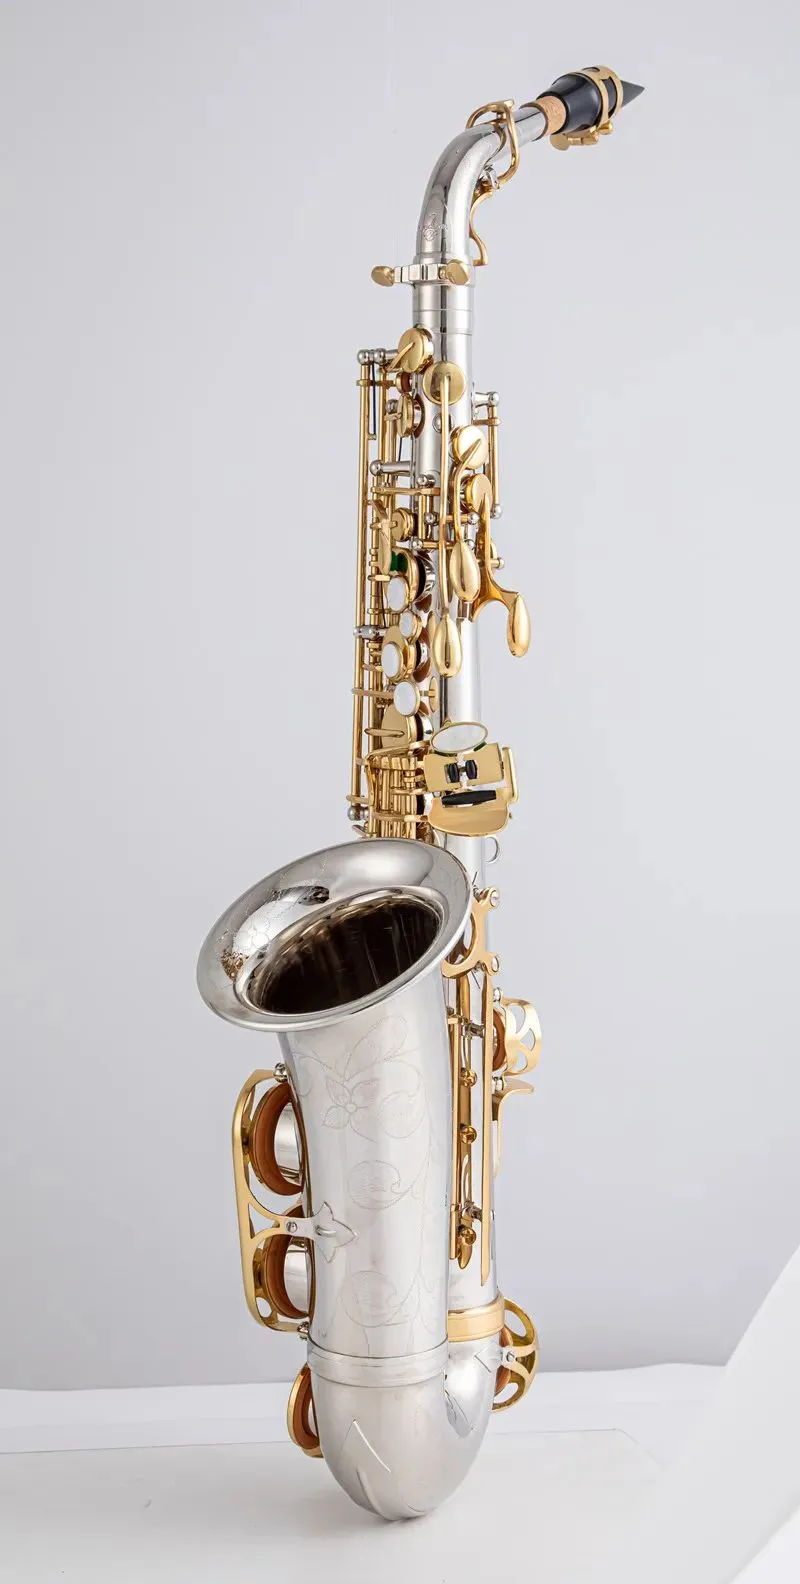 Brandneues A-WO37 Altsaxophon mit vernickeltem Goldschlüssel, professionelles Saxophon-Mundstück mit Koffer und Zubehör